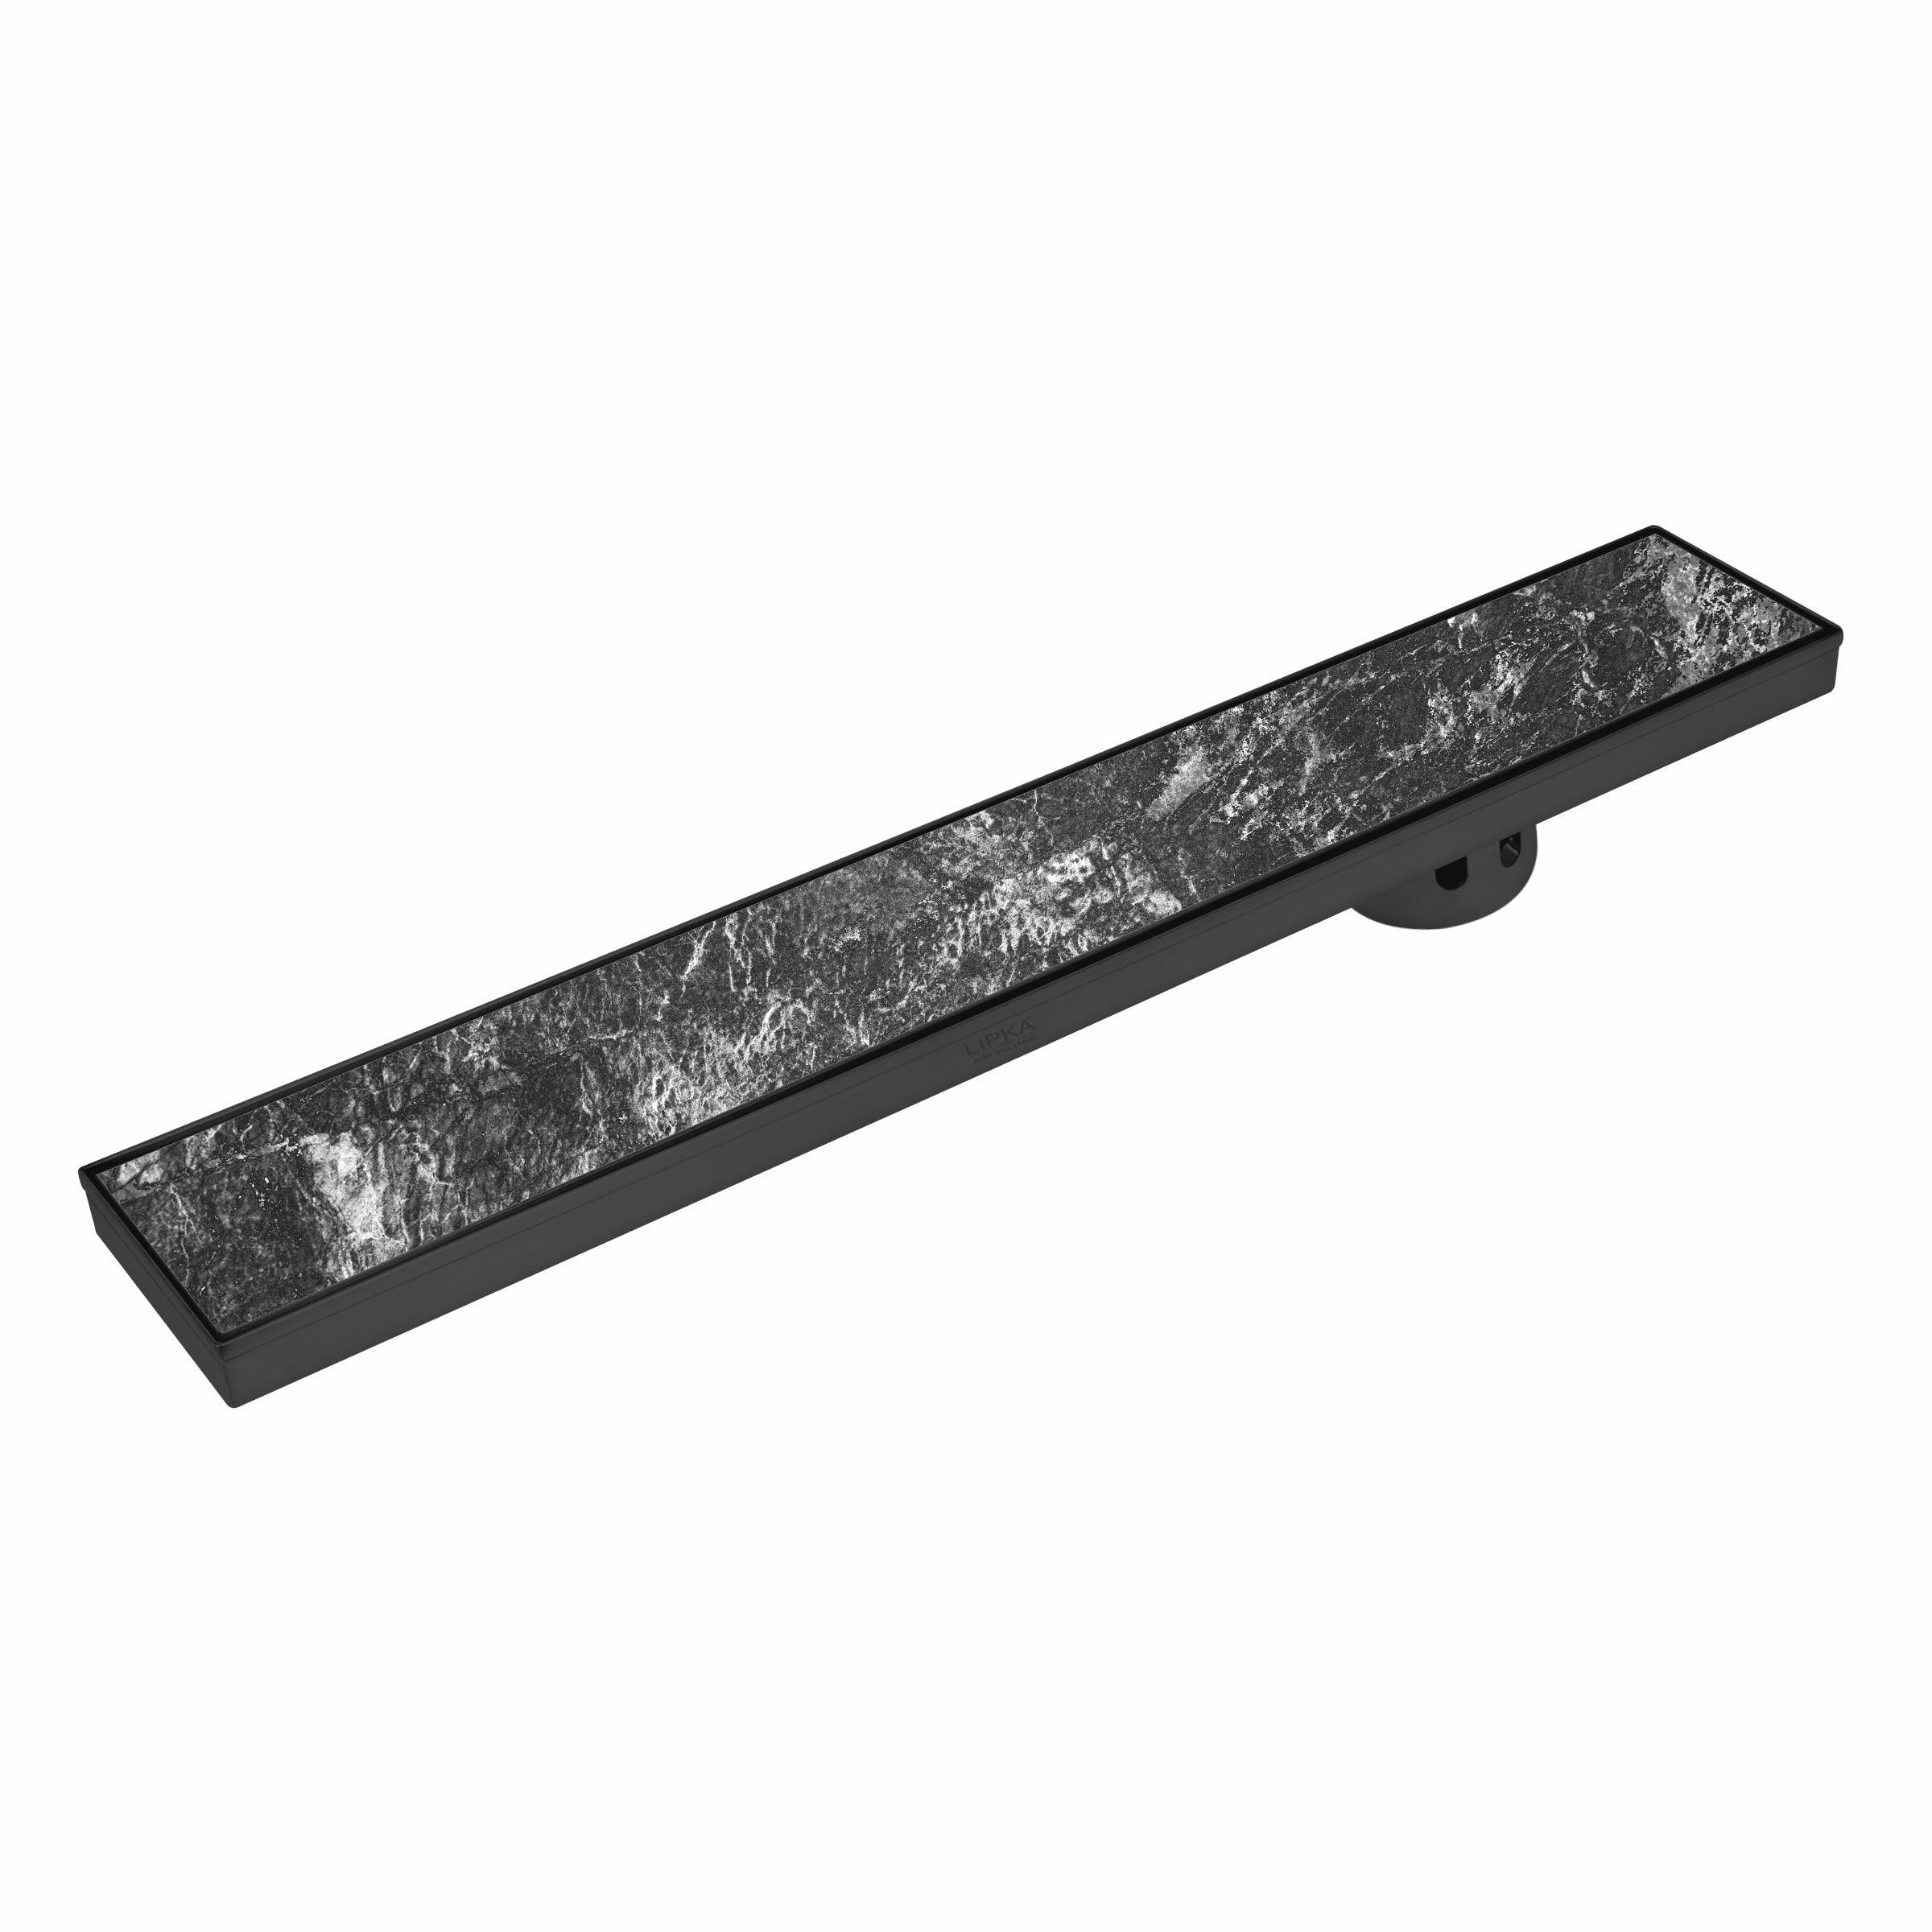 Tile Insert Shower Drain Channel - Black (36 x 4 Inches) - LIPKA - Lipka Home